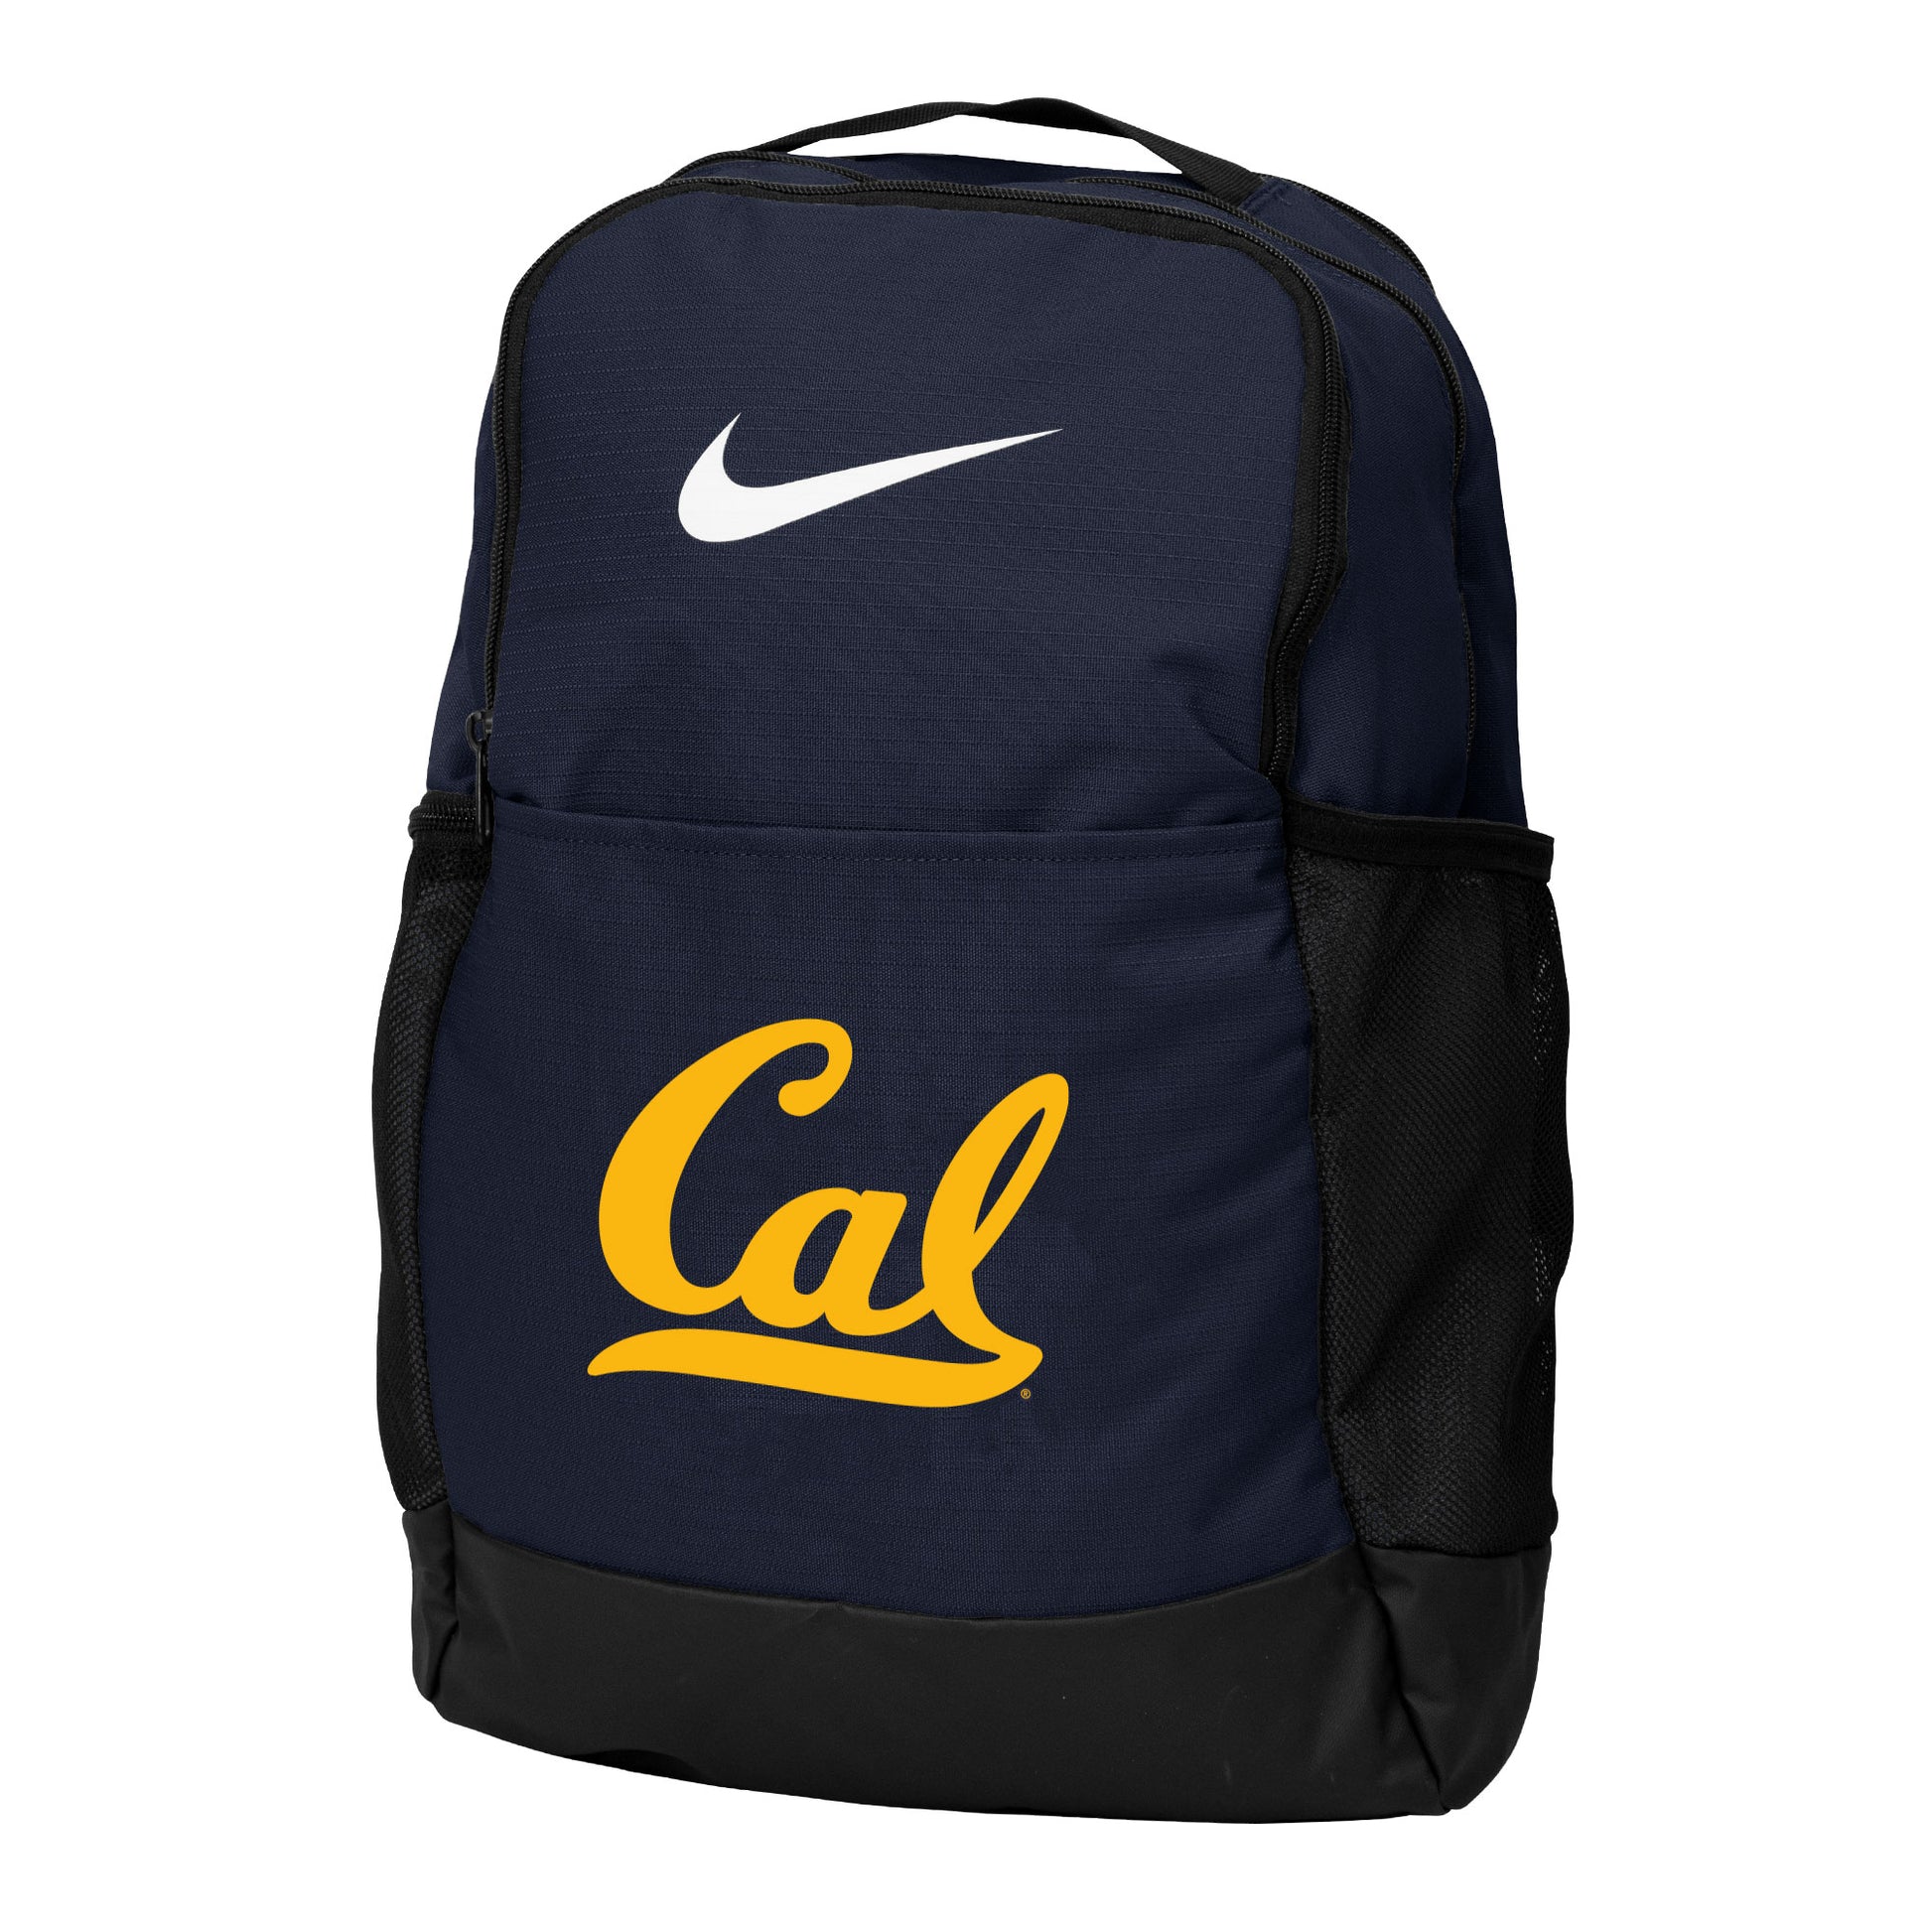 U.C. Berkeley Cal Nike Backpack-Navy-Shop College Wear